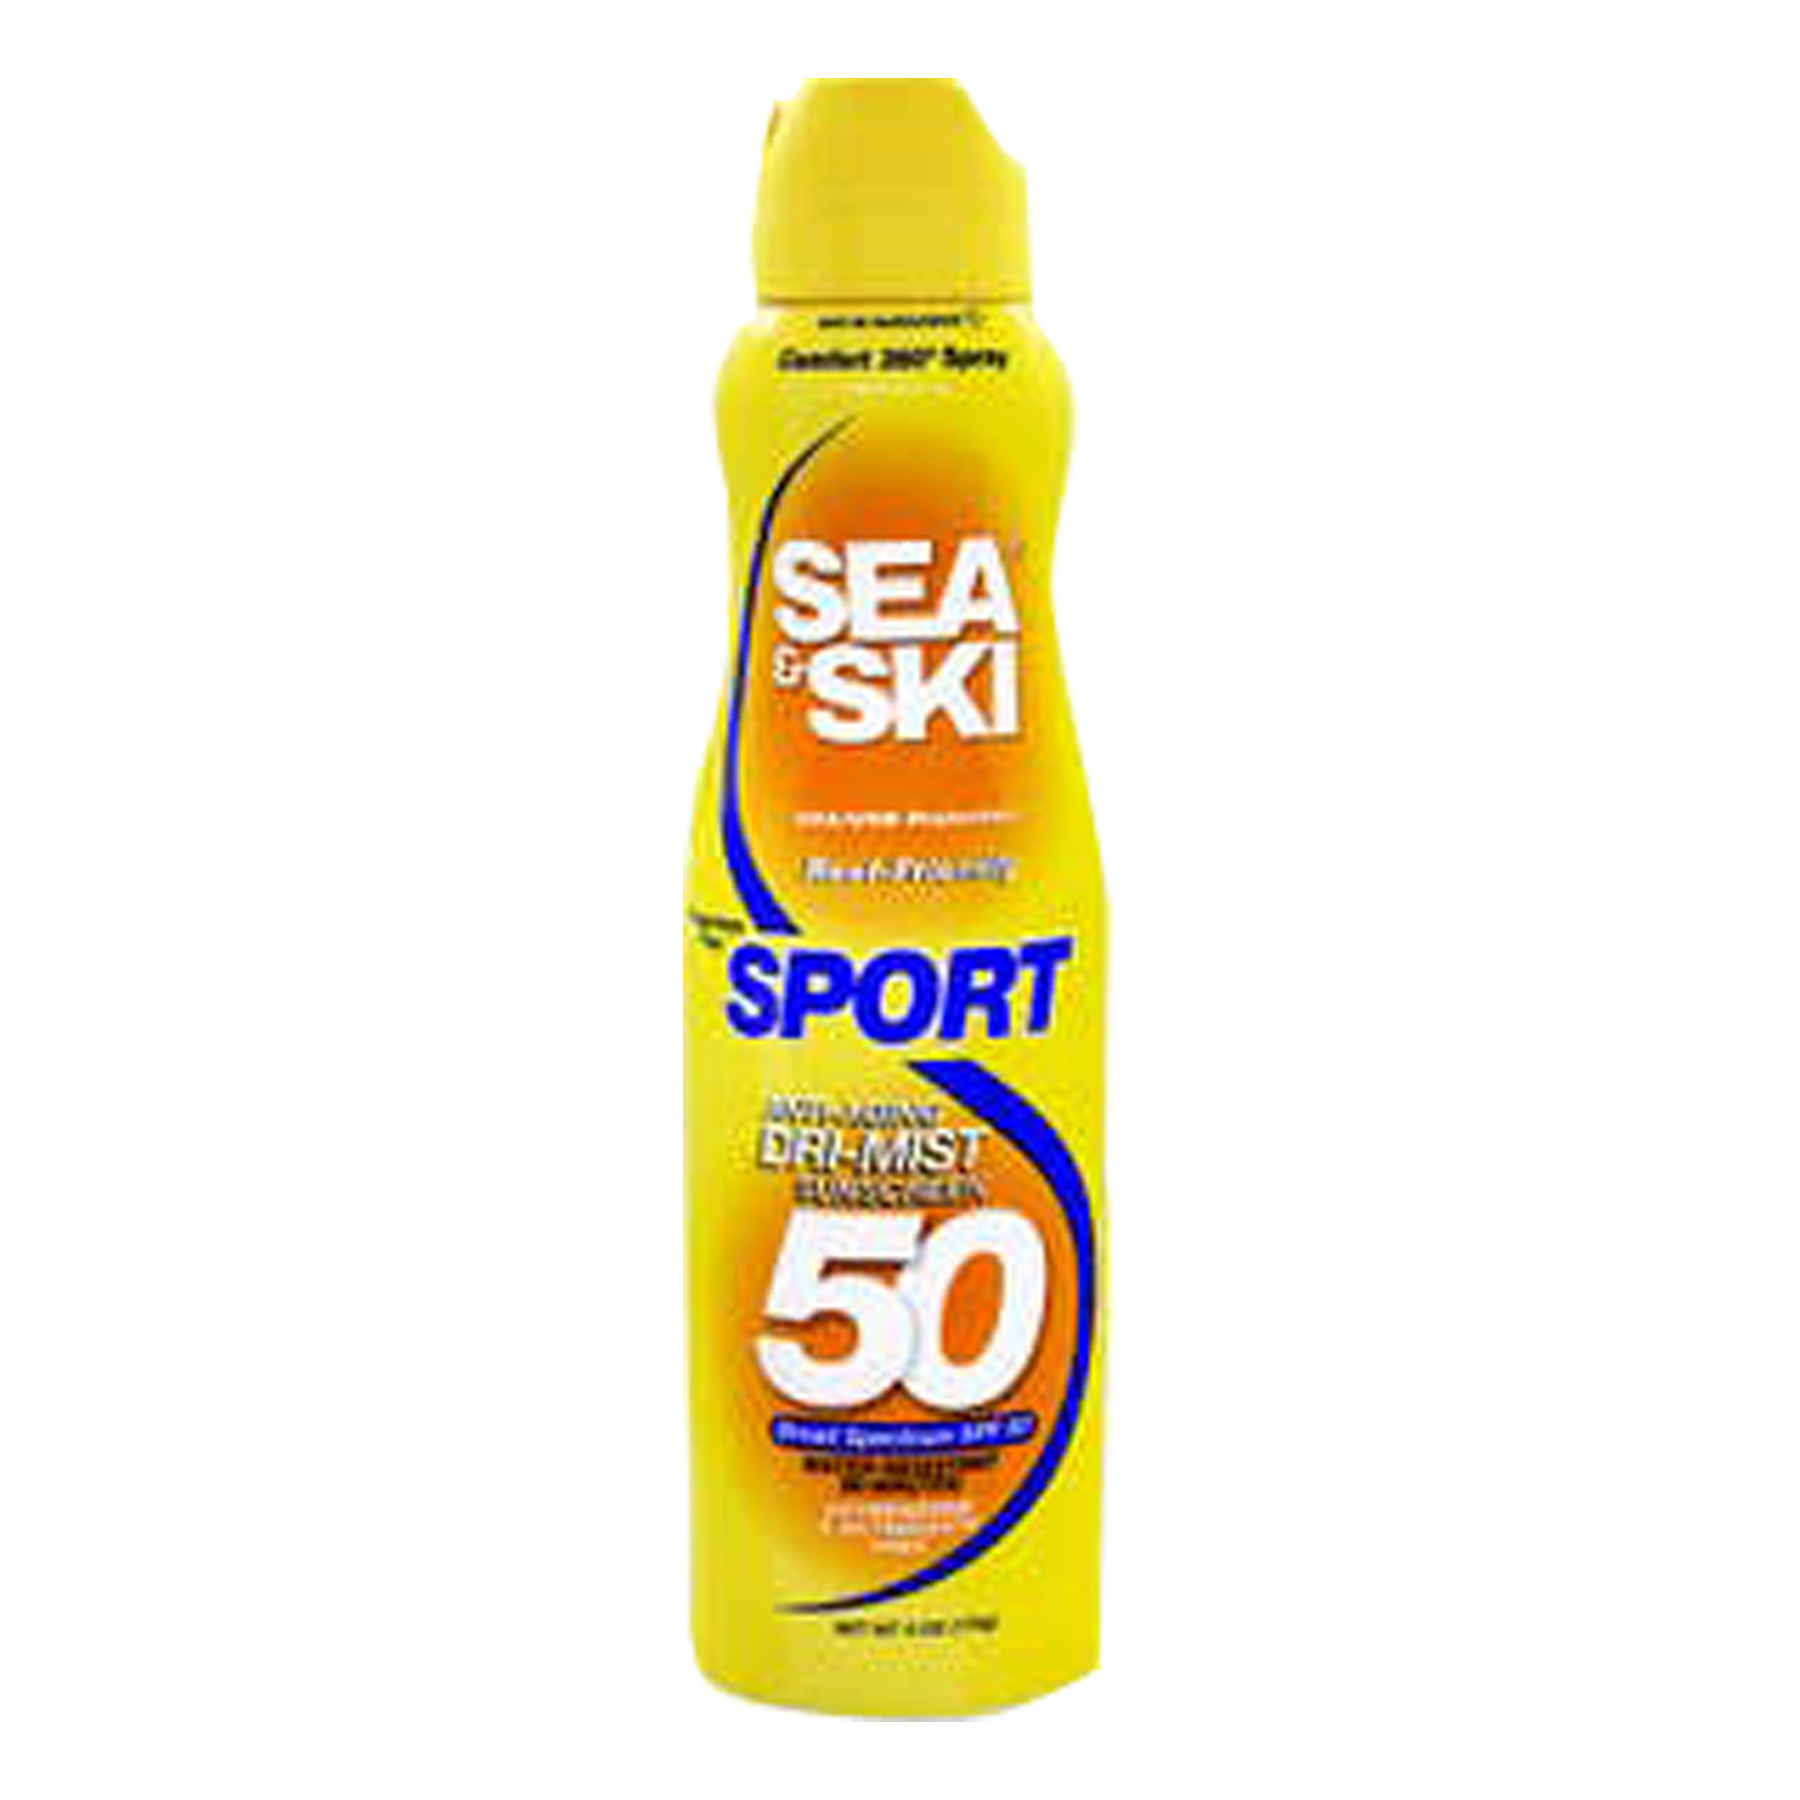 SEA & SKI SPORT SPRAY SPF50 6OZ